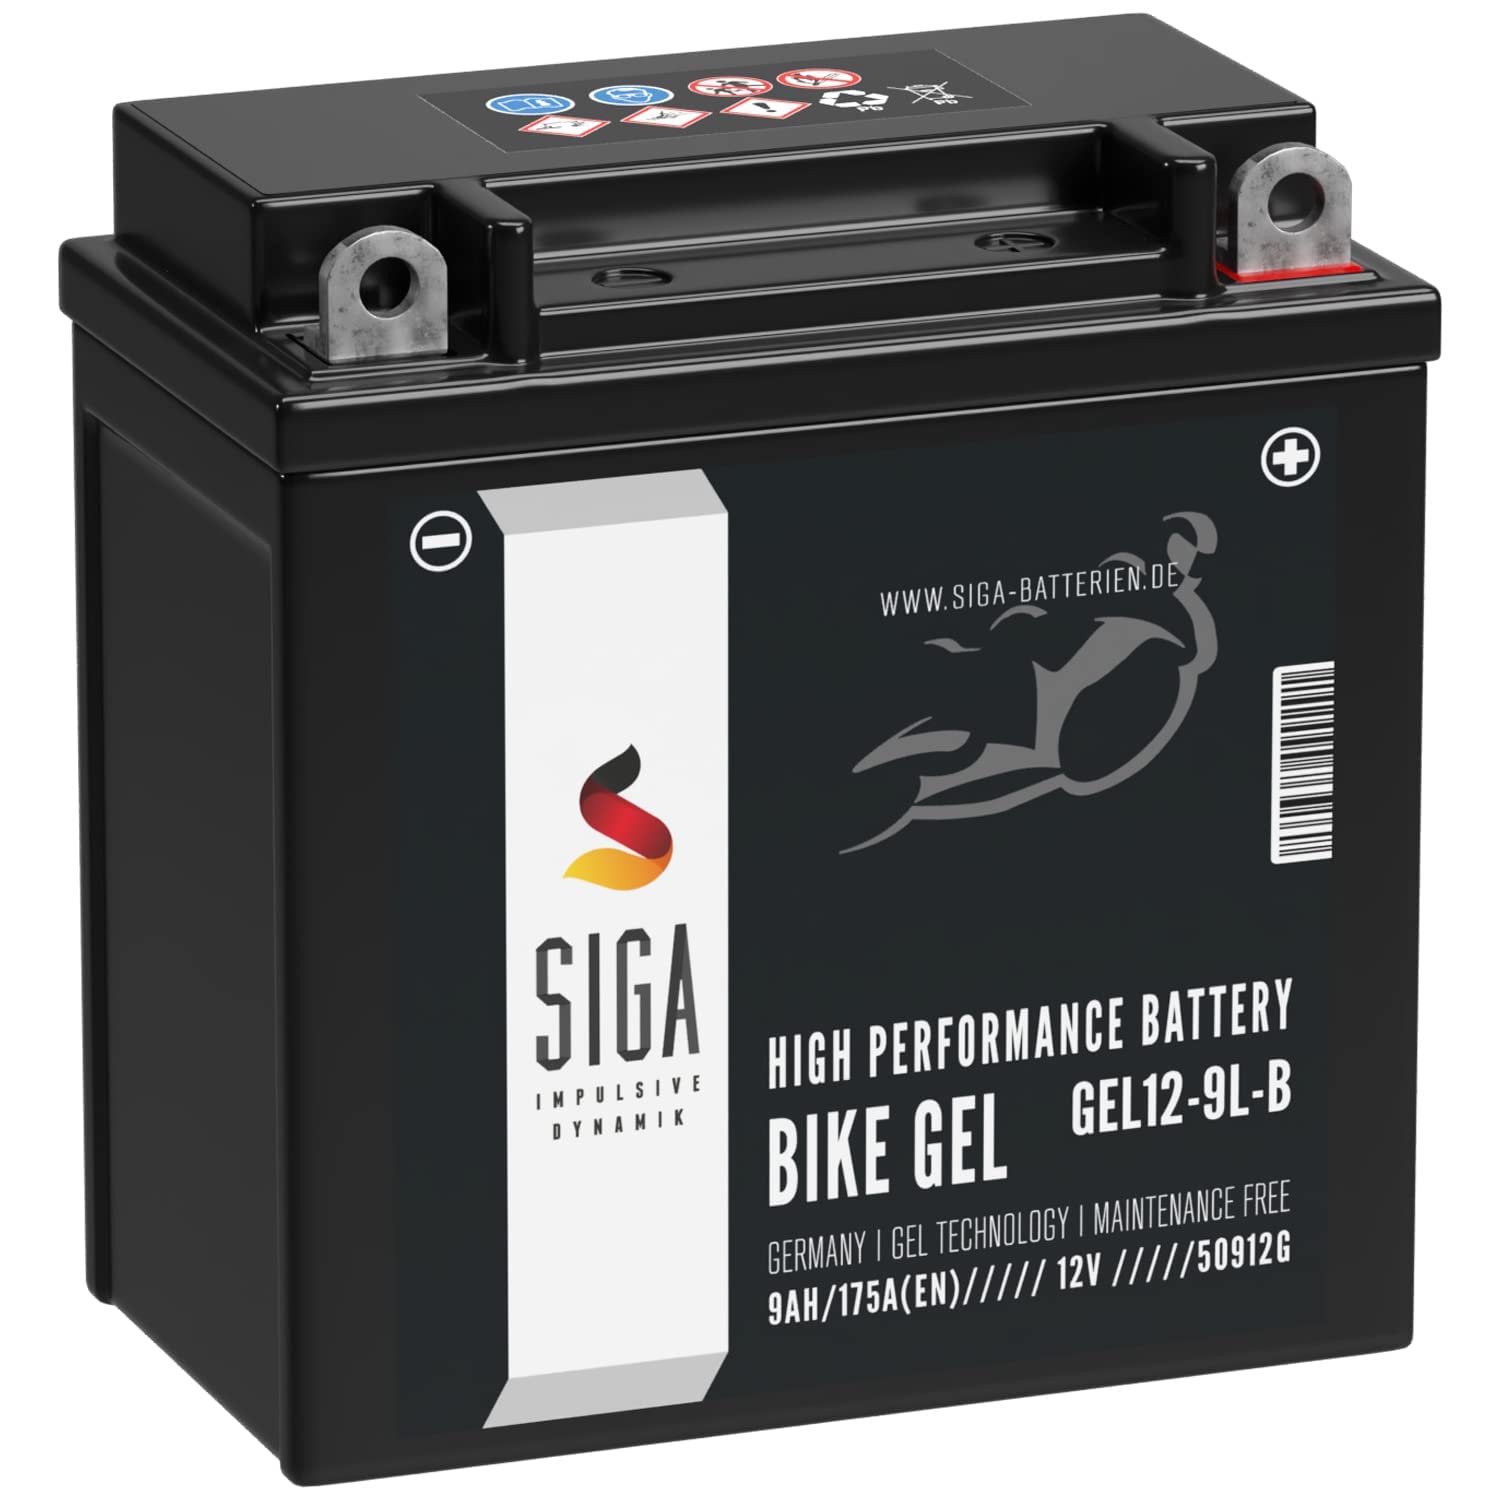 SIGA YB9L-B GEL Motorradbatterie 12V 9Ah 175A/EN GEL12-9L-B GEL Batterie 12V 50912 YB9L-A2 12N7-3B 12N9-3B auslaufsicher wartungsfrei von SIGA IMPULSIVE DYNAMIK